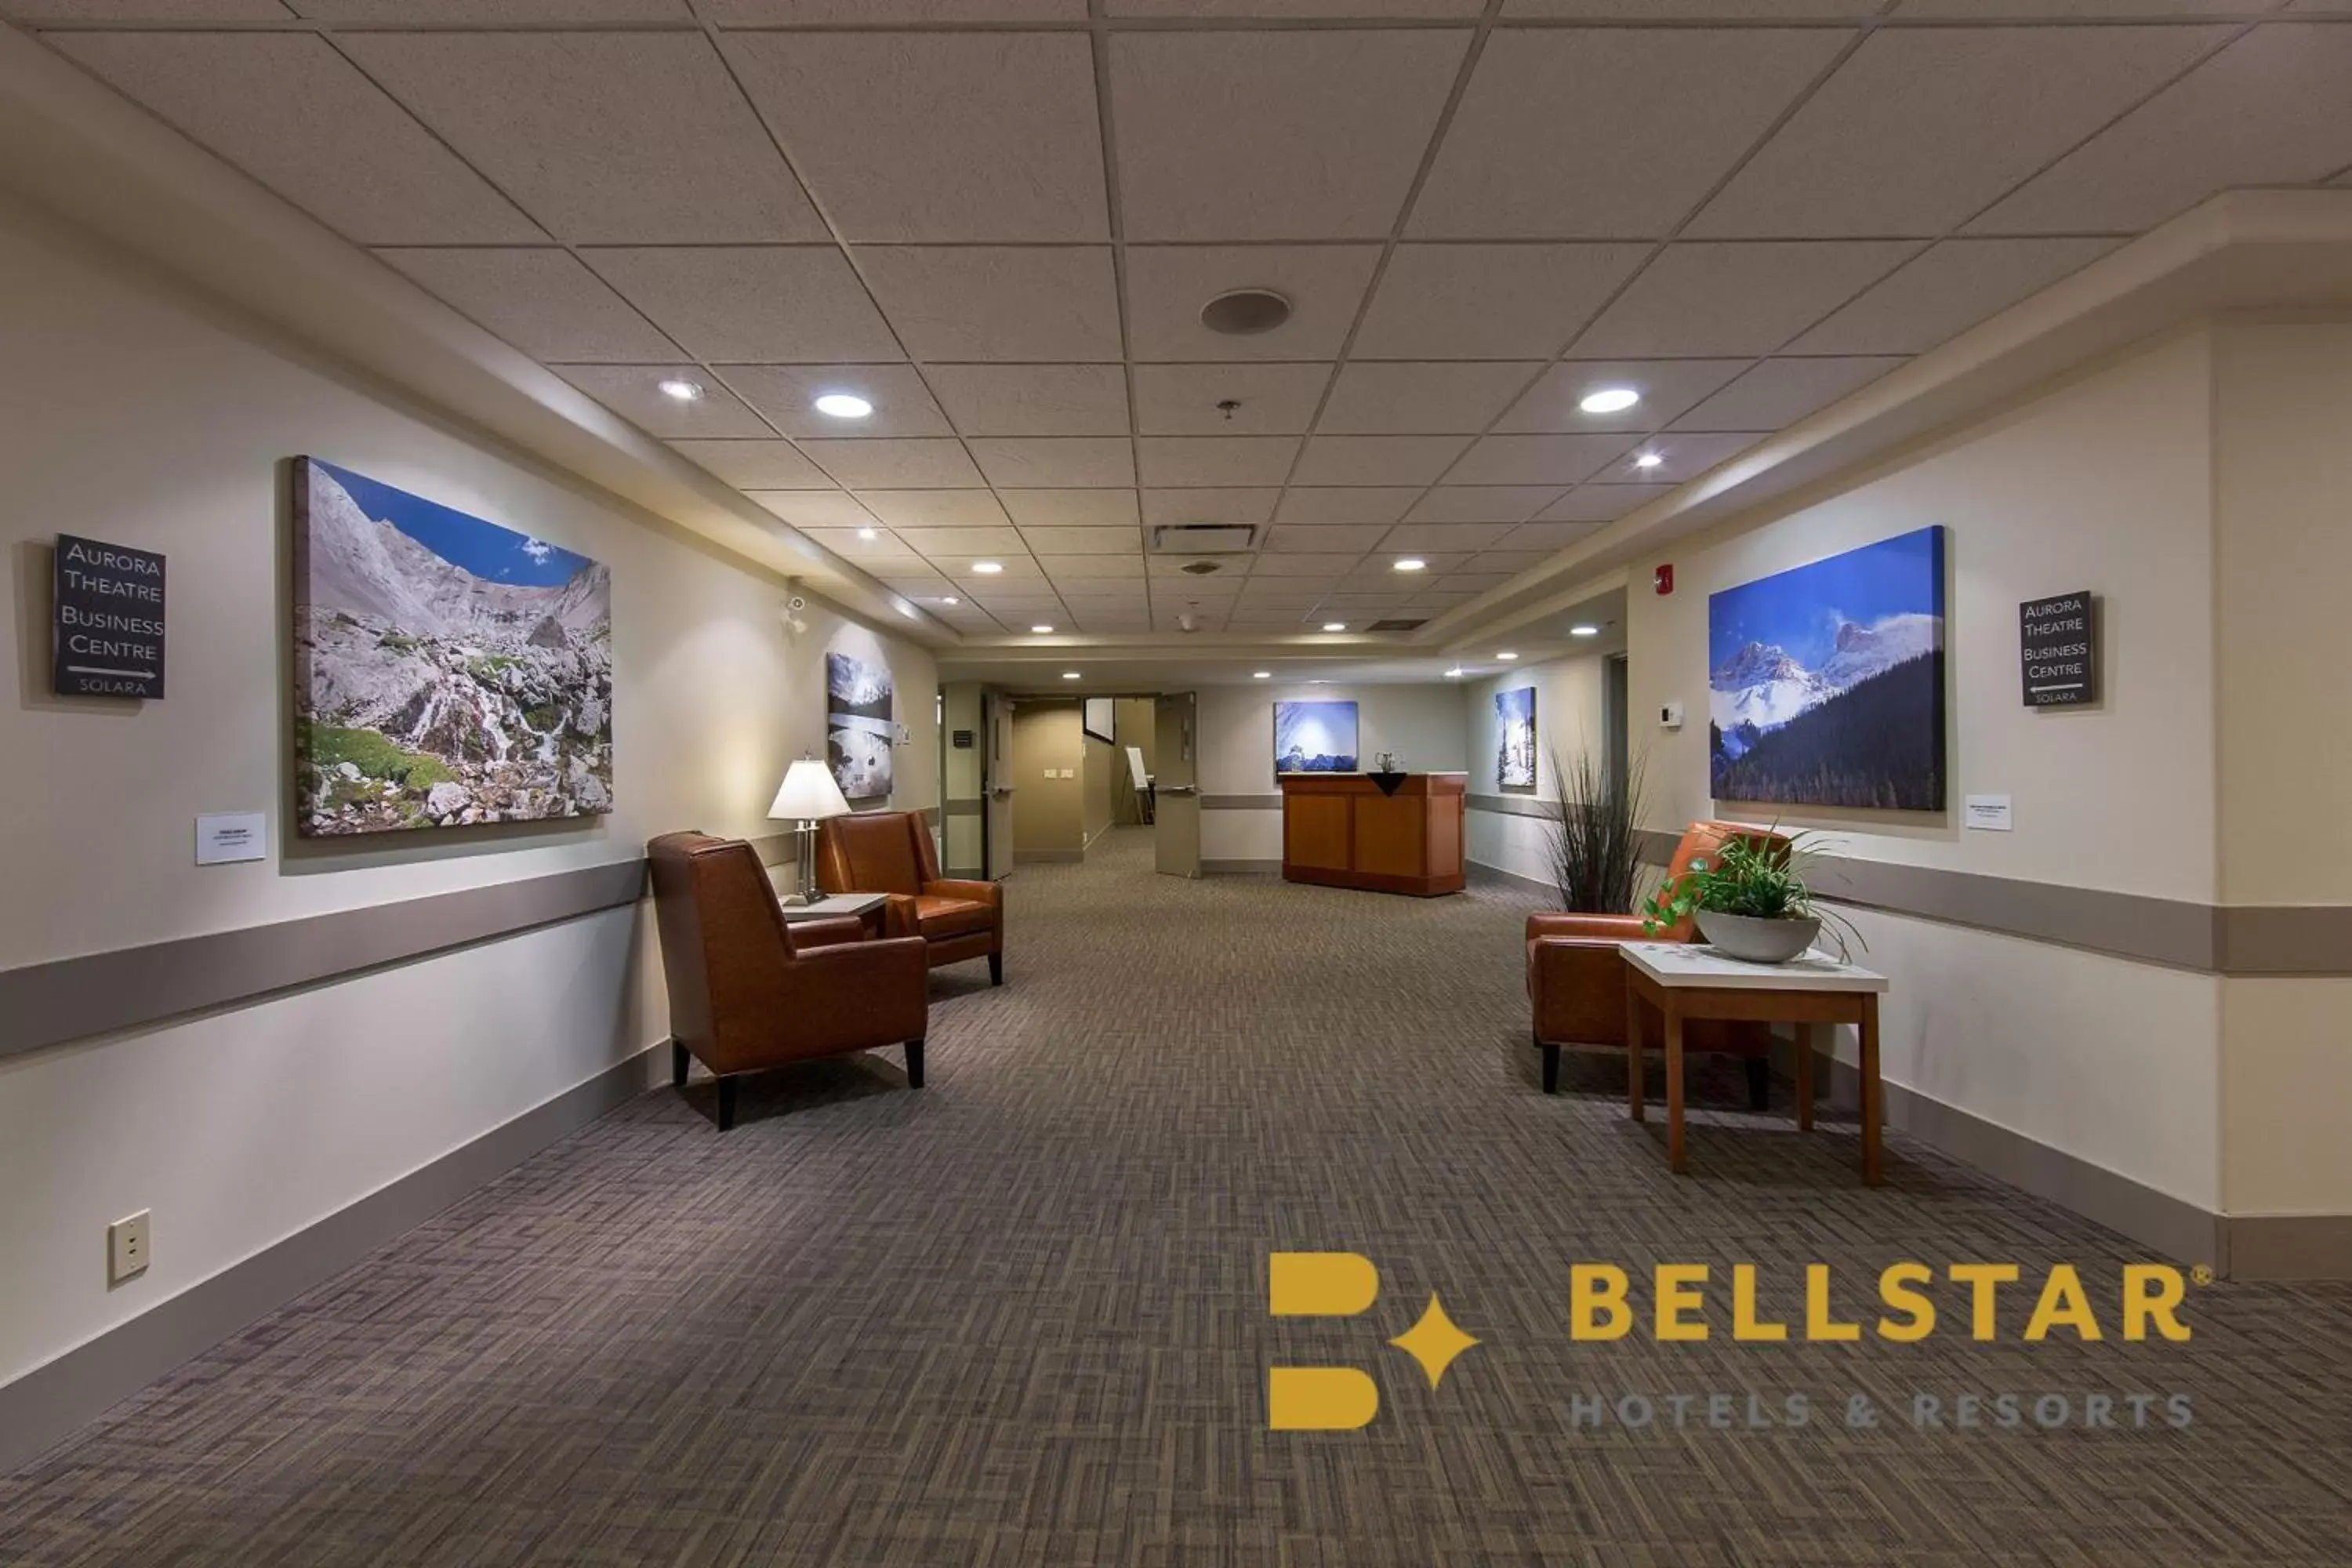 Lobby or reception, Lobby/Reception in Solara Resort by Bellstar Hotels